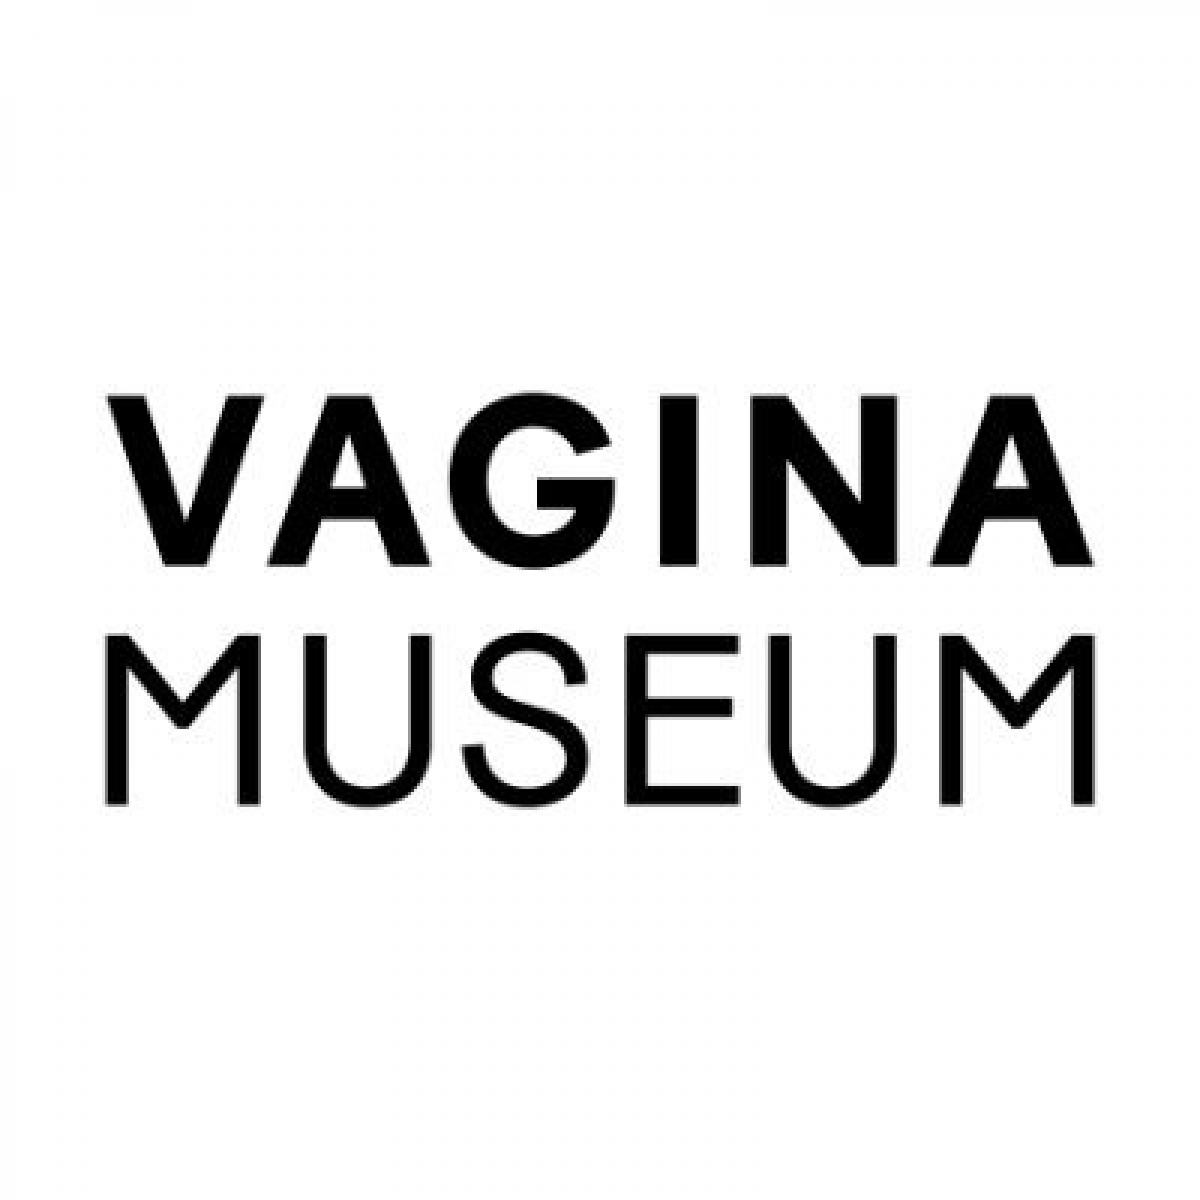 Vagina Museum eCards